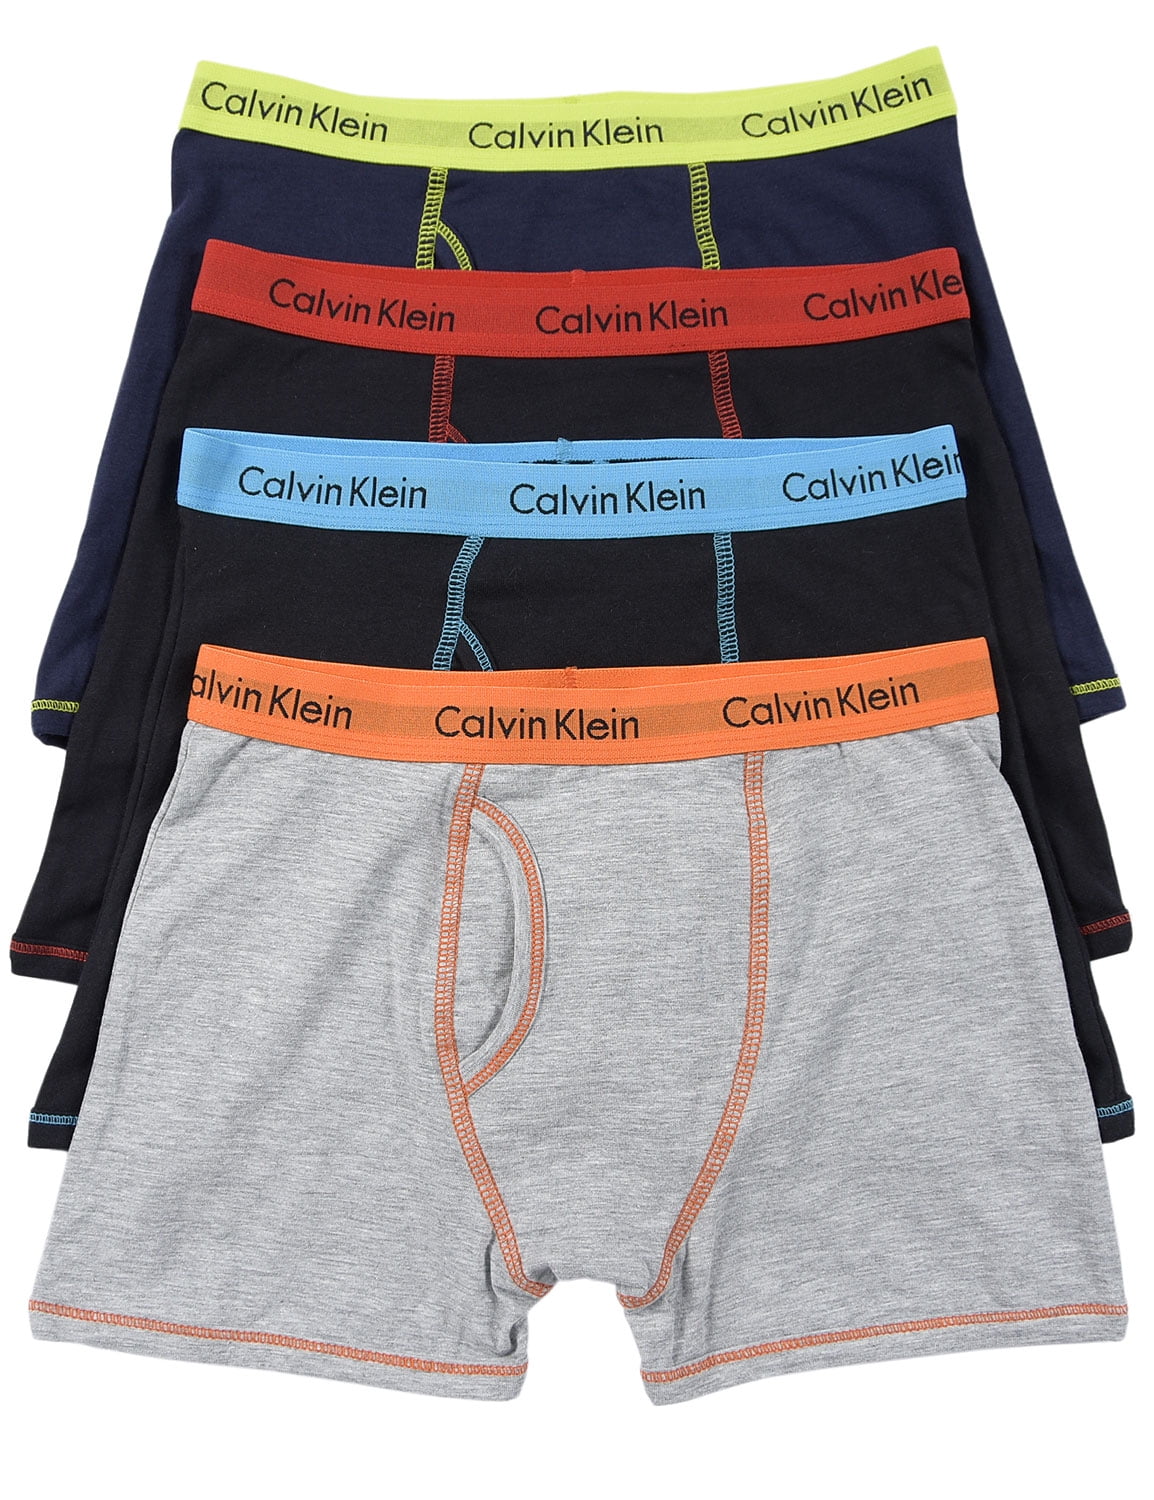 Calvin Klein - CALVIN KLEIN Boys Boxer Briefs Underwear Dark Multi